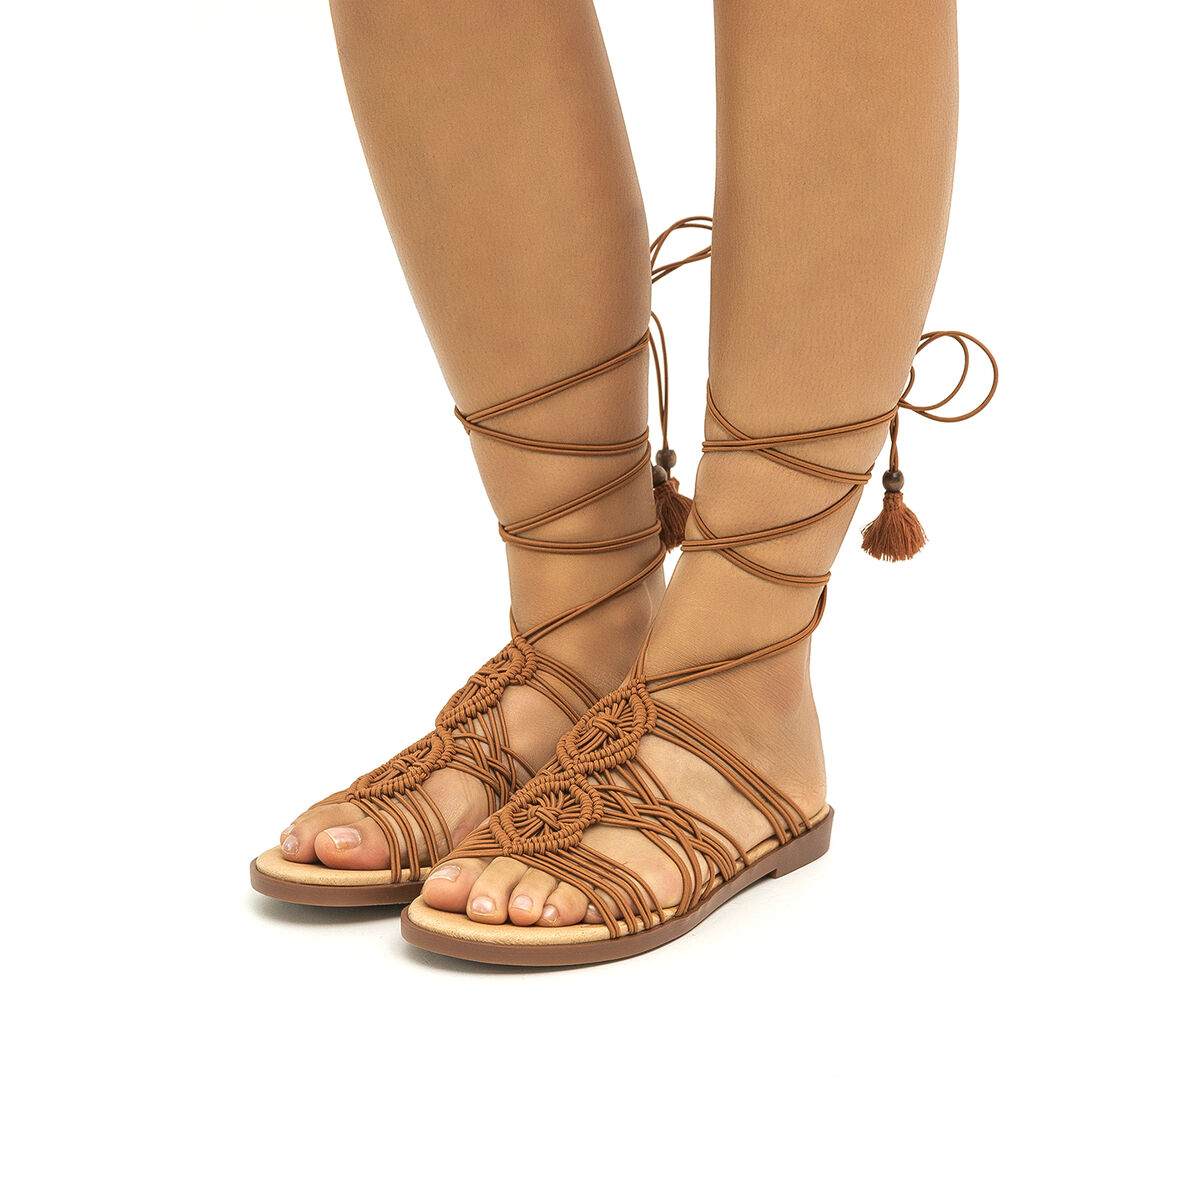 Sandalias planas de Mujer modelo MARIA de MTNG image number 1